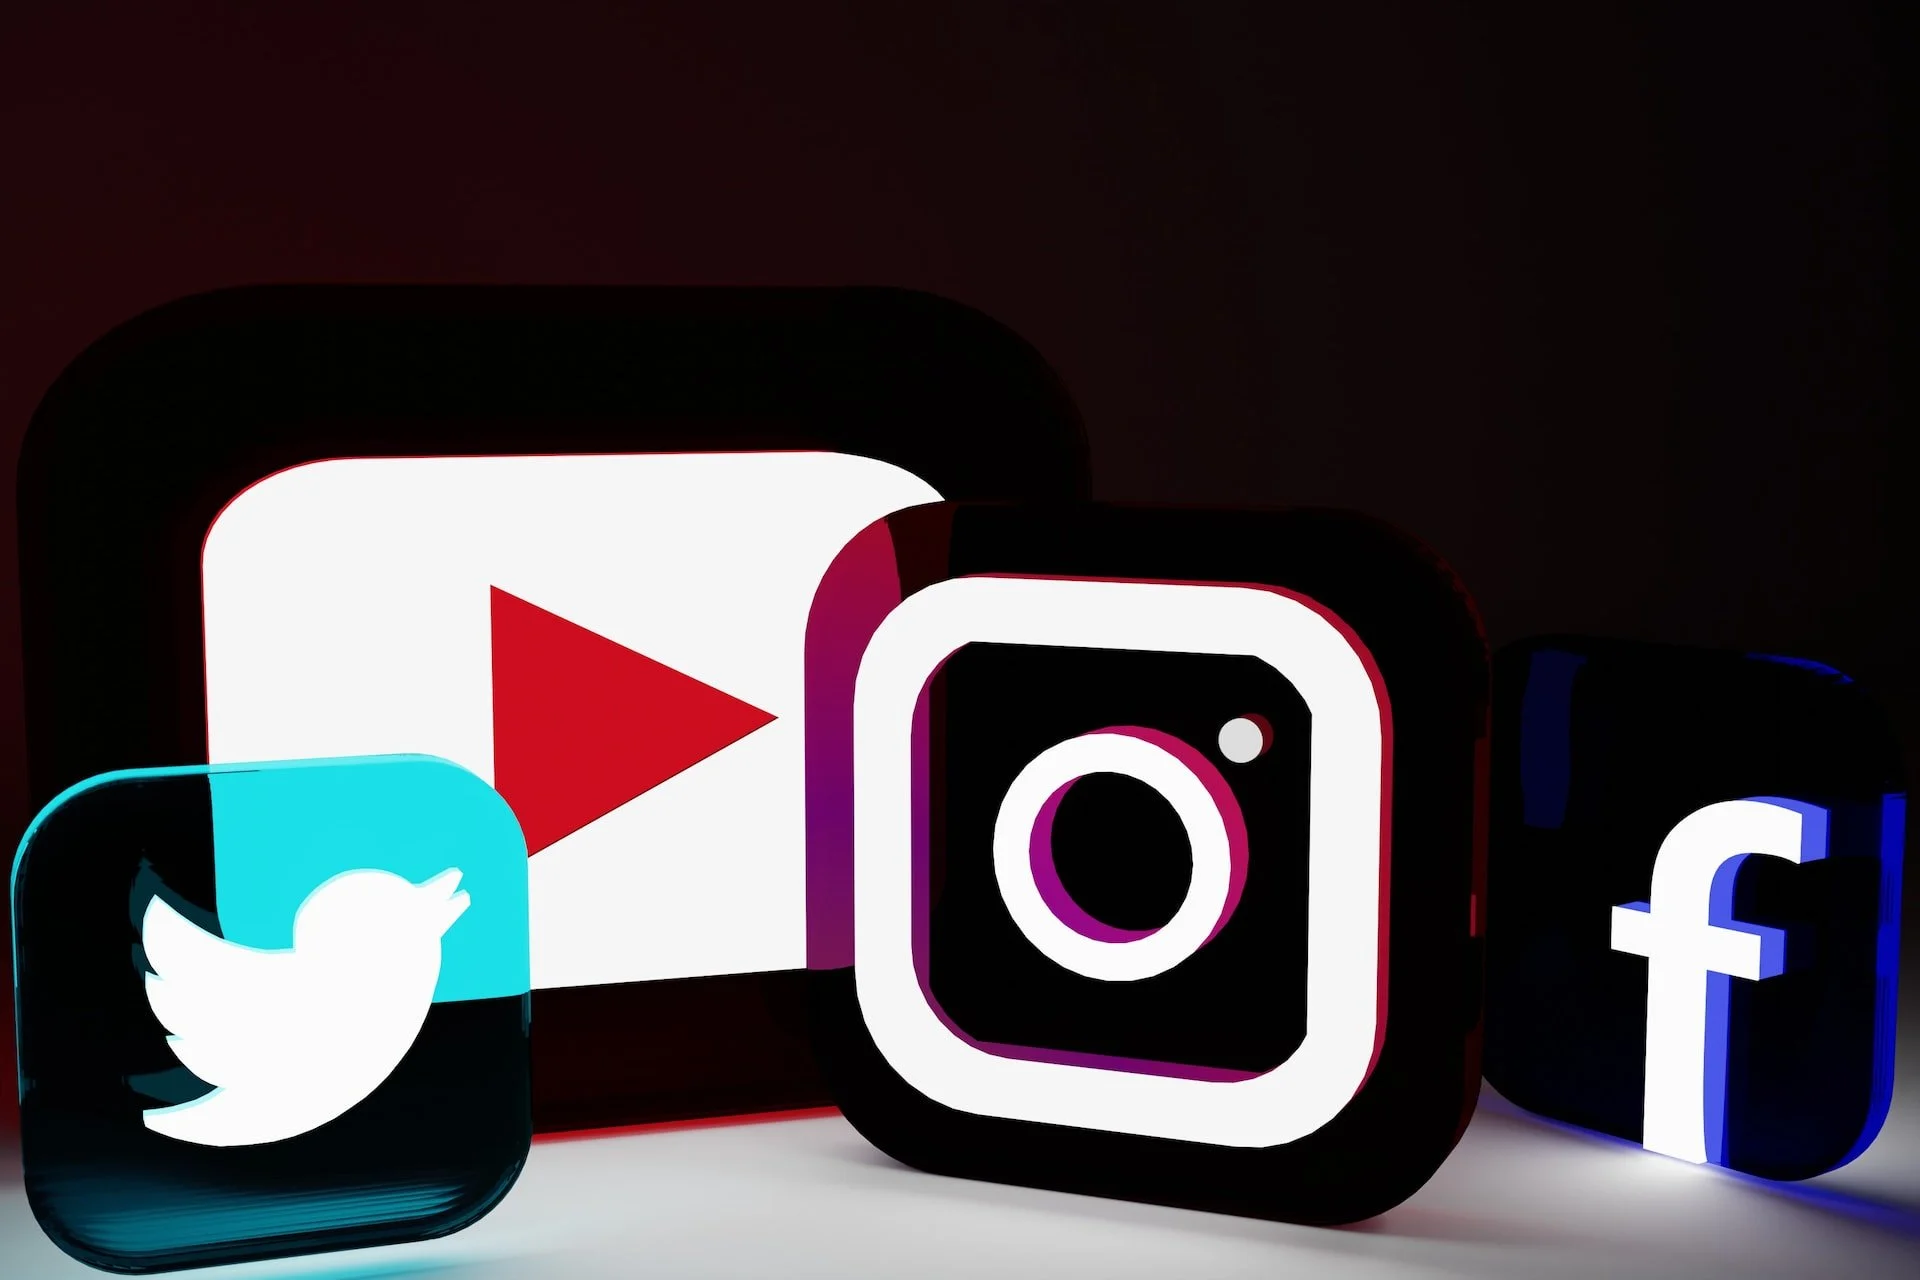 社交媒體平台 Twitter、YouTube、Instagram 和 Facebook 的透明和霓虹燈標誌